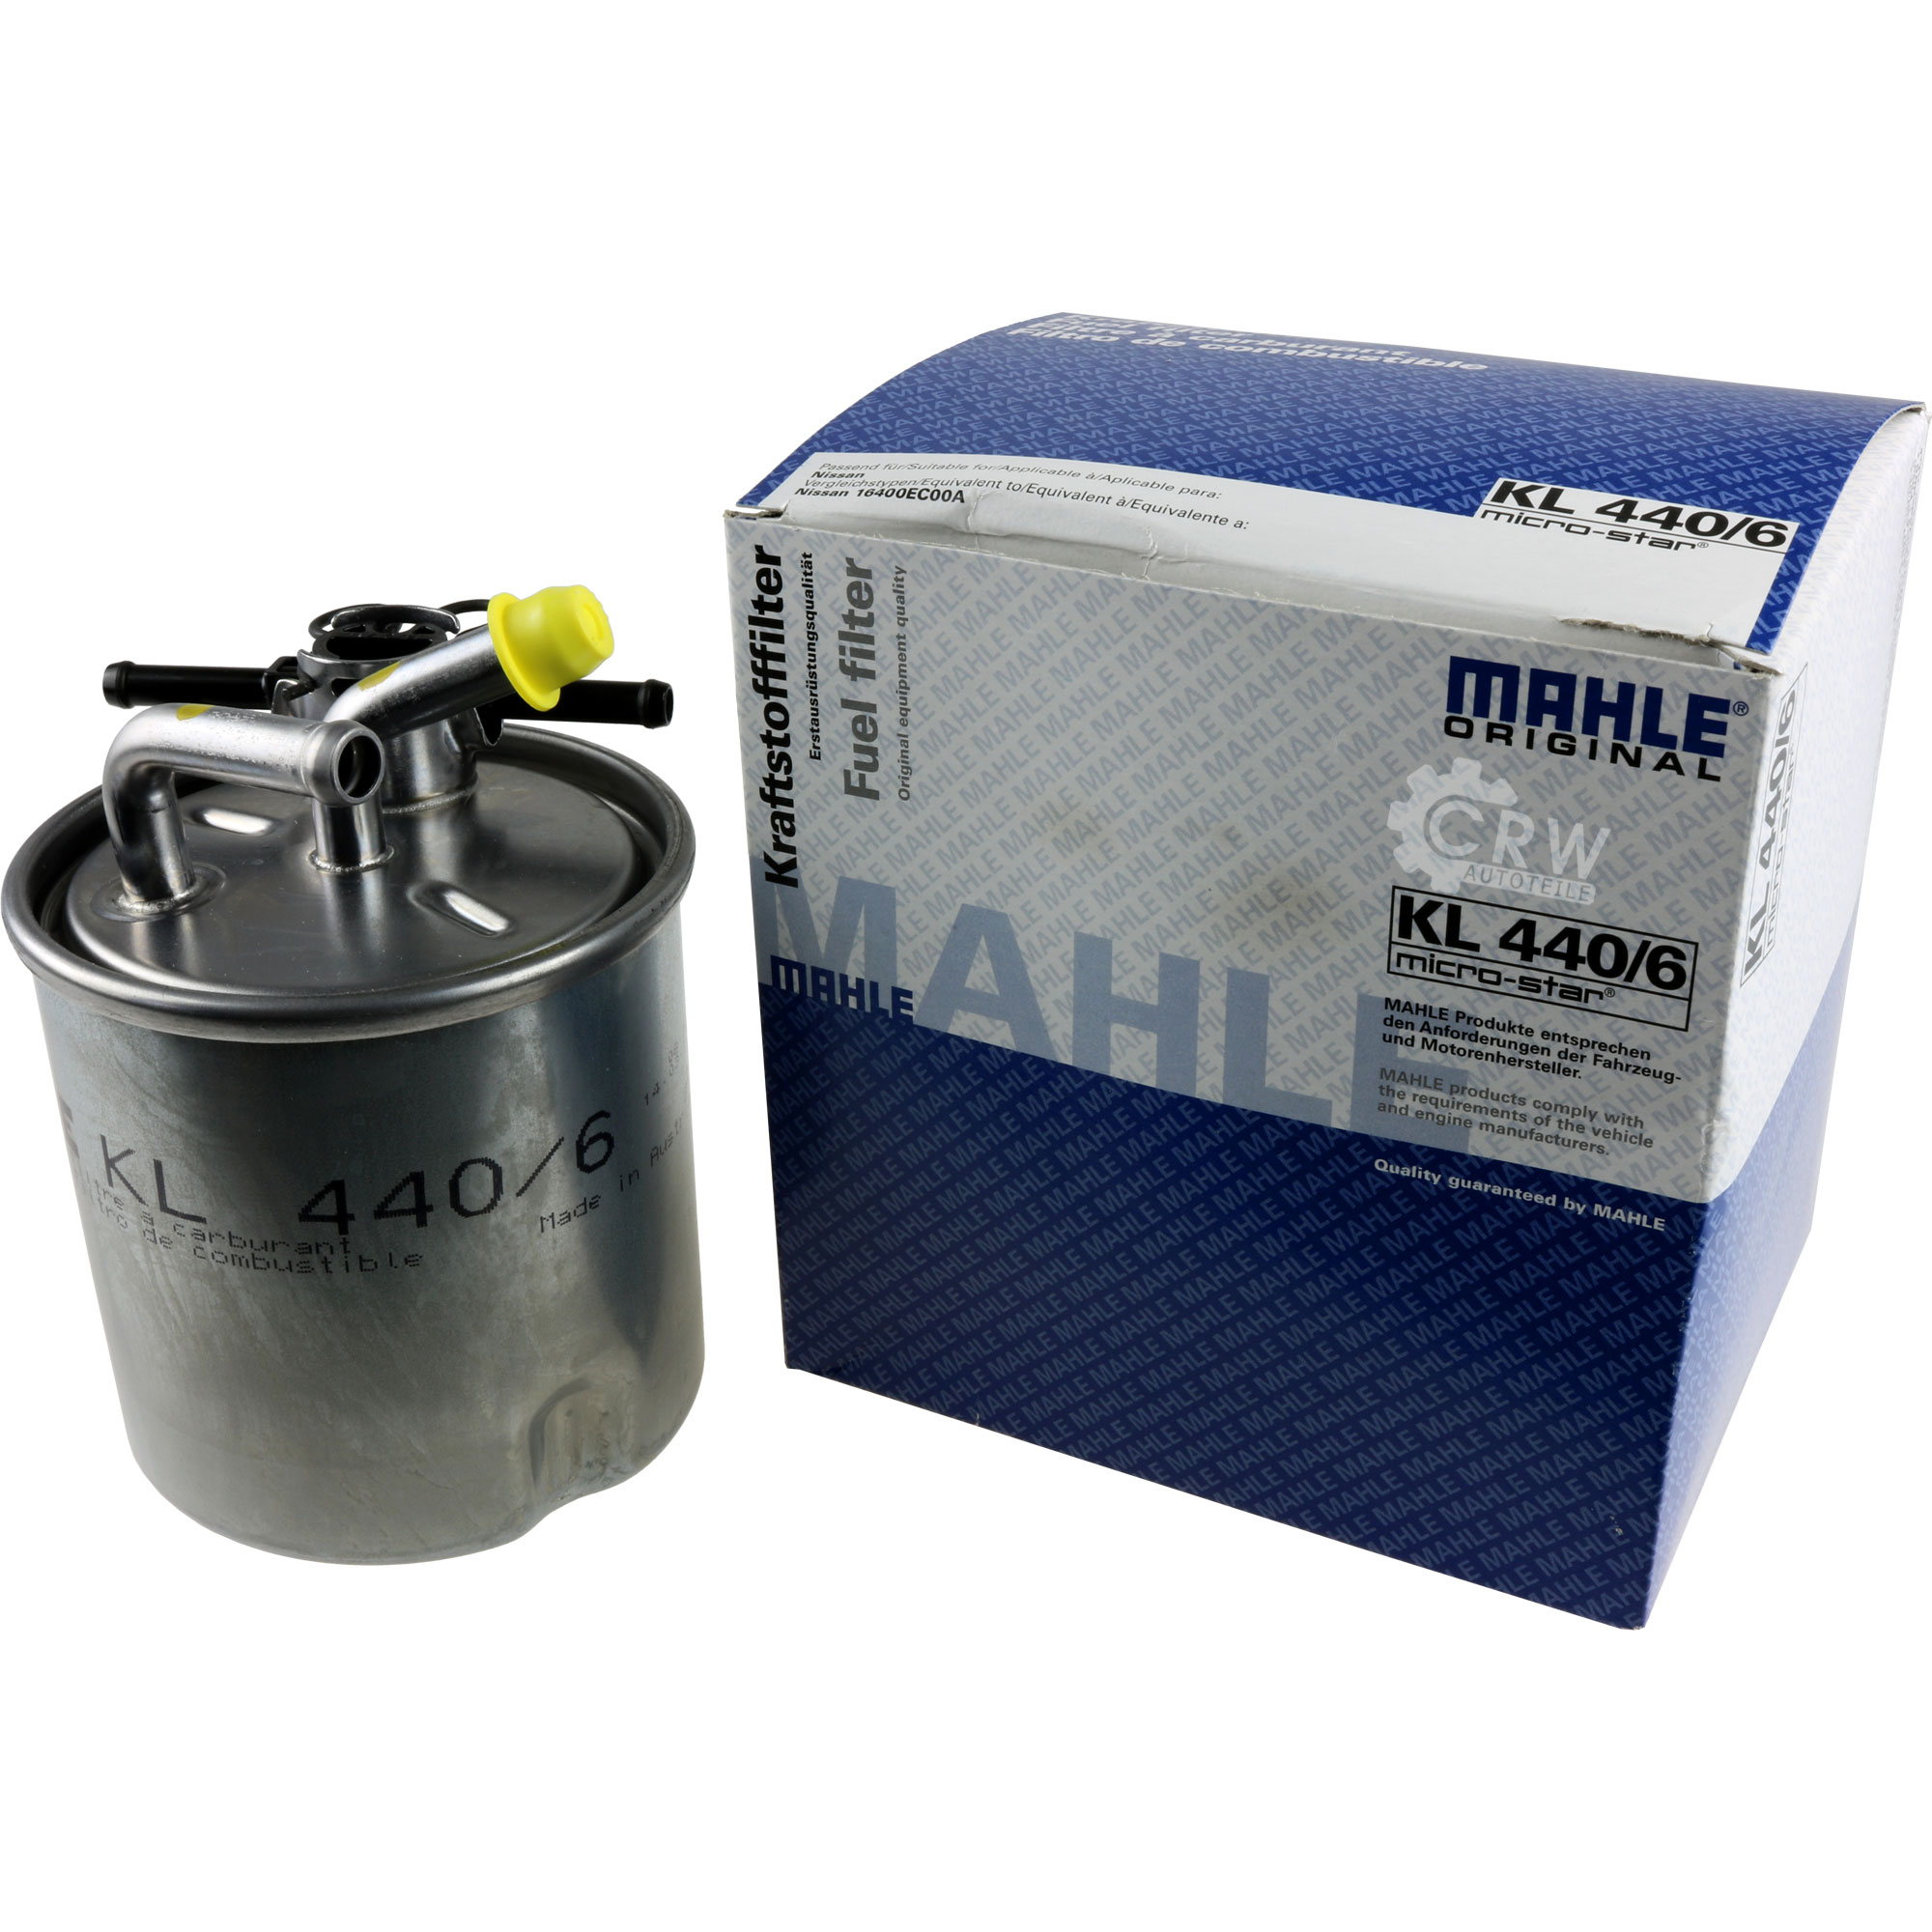 MAHLE Kraftstofffilter KL 440/6 Fuel Filter